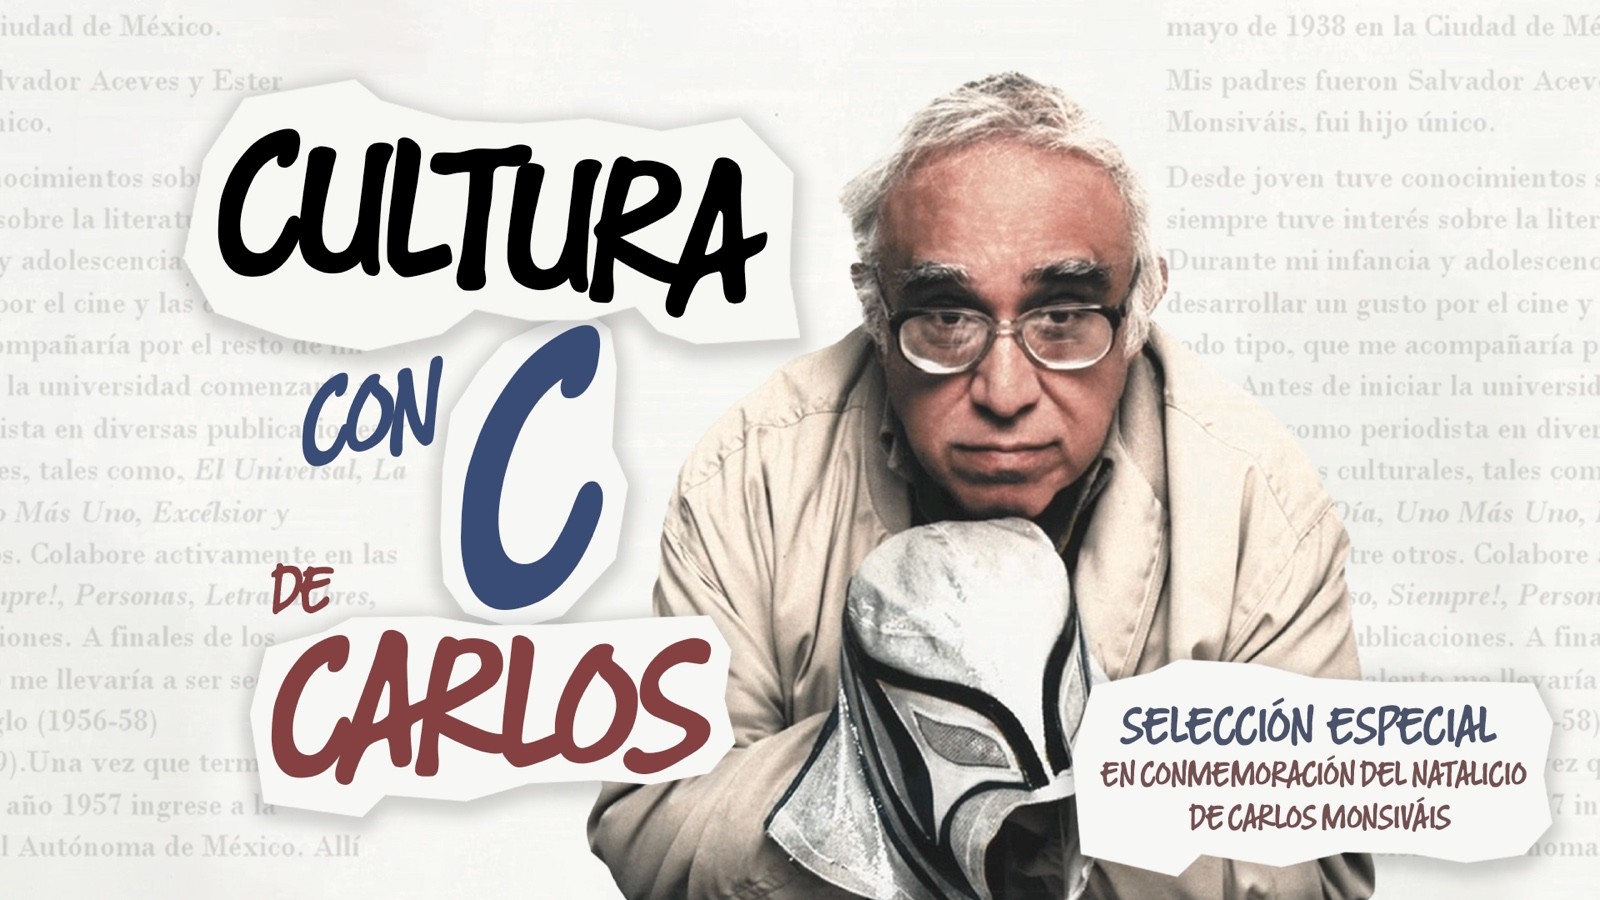 Cultura, con "C" de Carlos